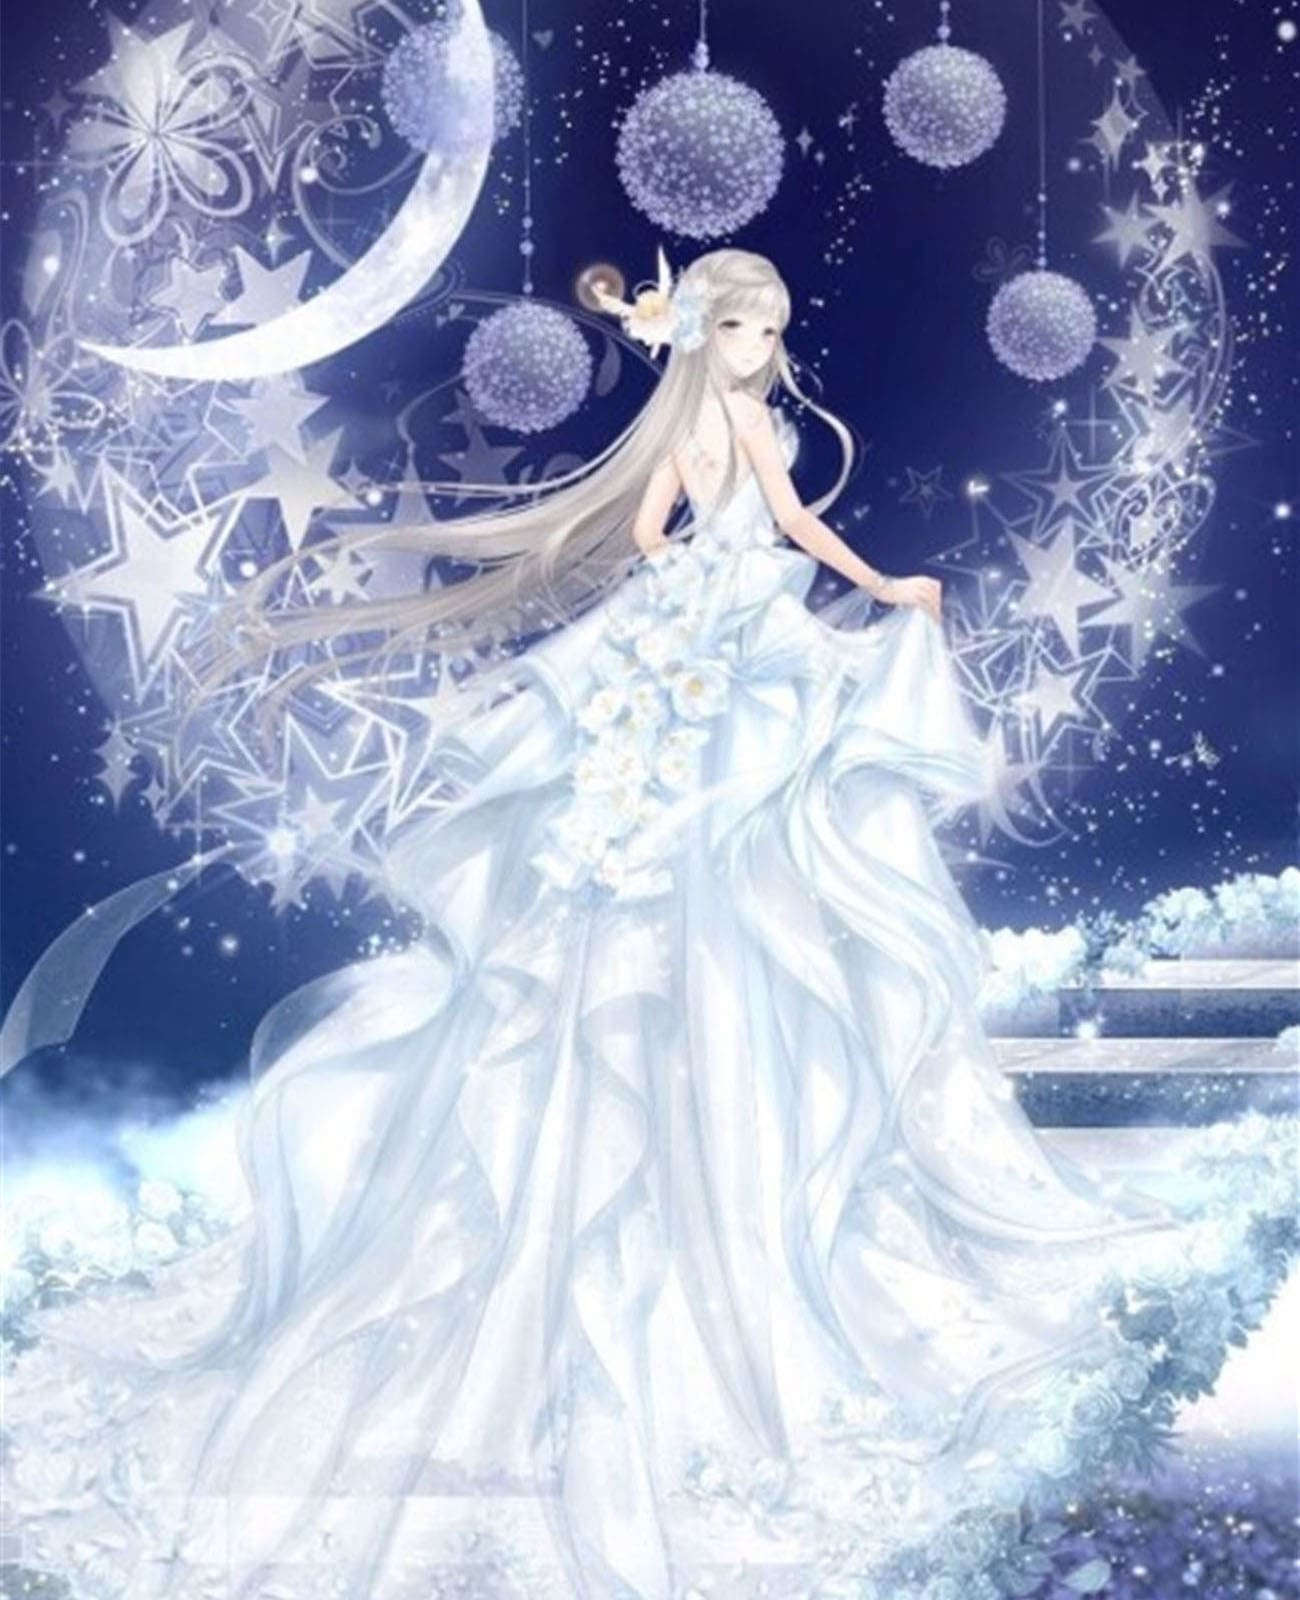 『神聖な月の白魔術』で全ての恋愛・全ての願いを叶えます。